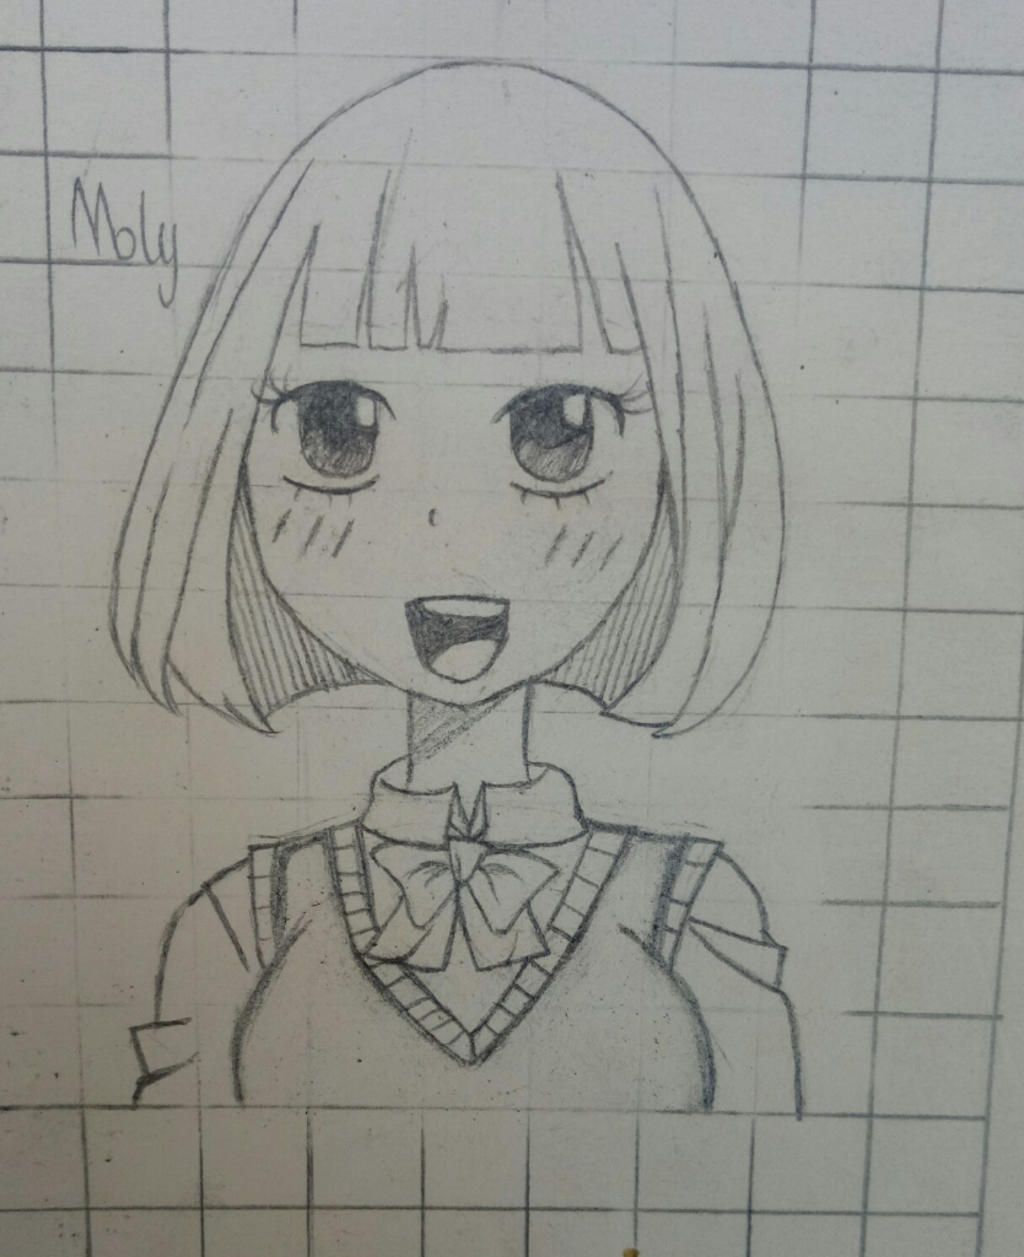 Vẽ 1 pic anime girl và nhận xét pic dưới cho ny nha mn (đây là nick ms của  ny đó) lâu ròi hăm vẽ nên trình tụt dốc (mà trình ny